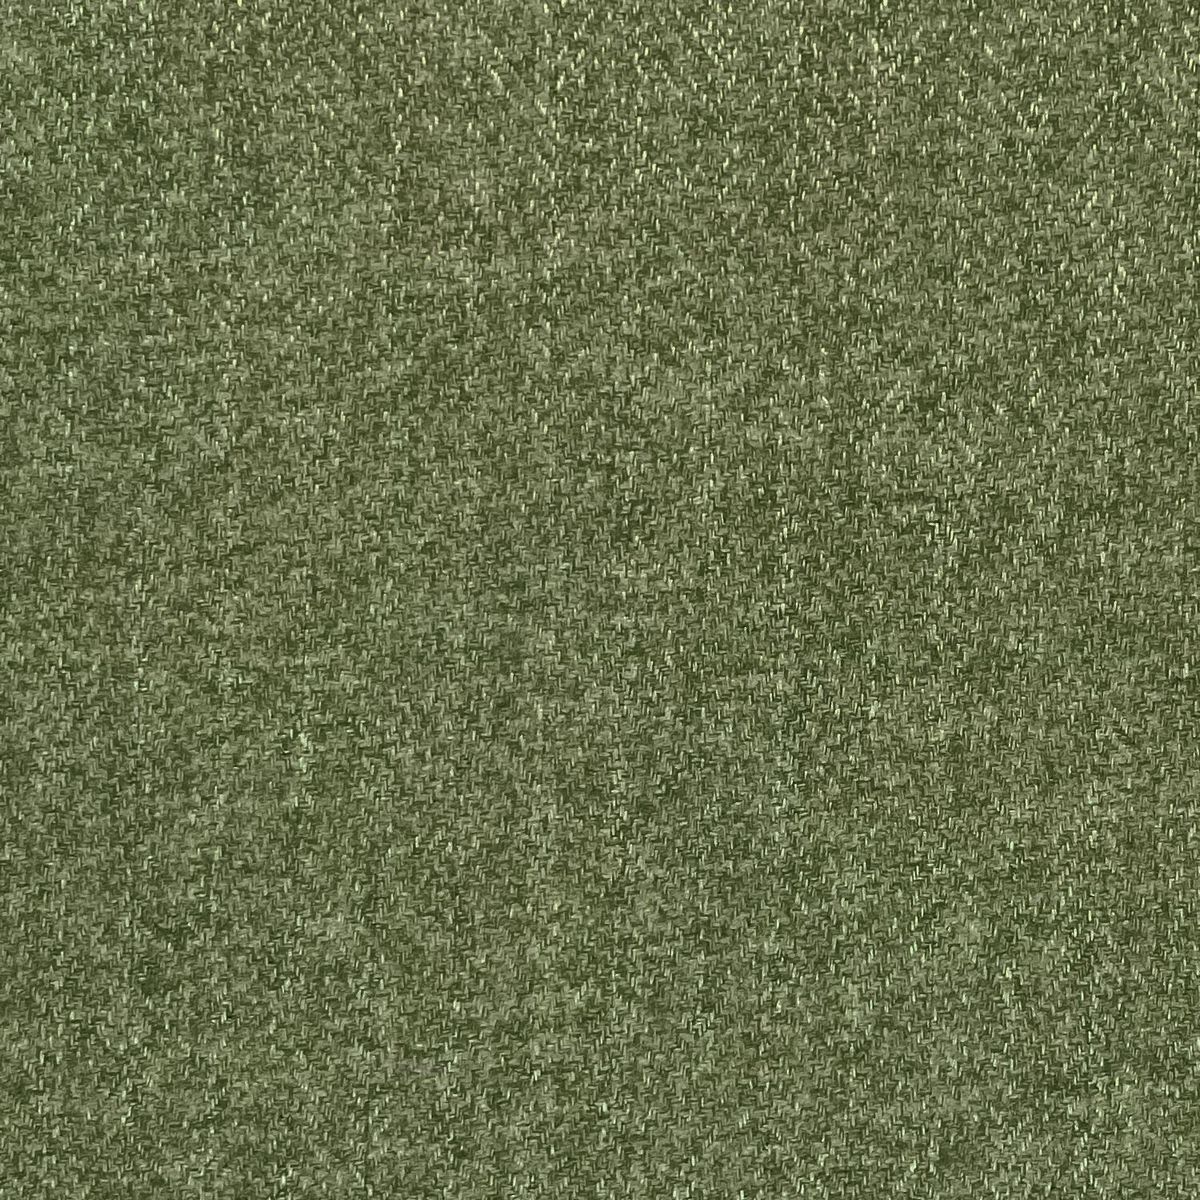 Tweed Jungle Fabric by Chatham Glyn